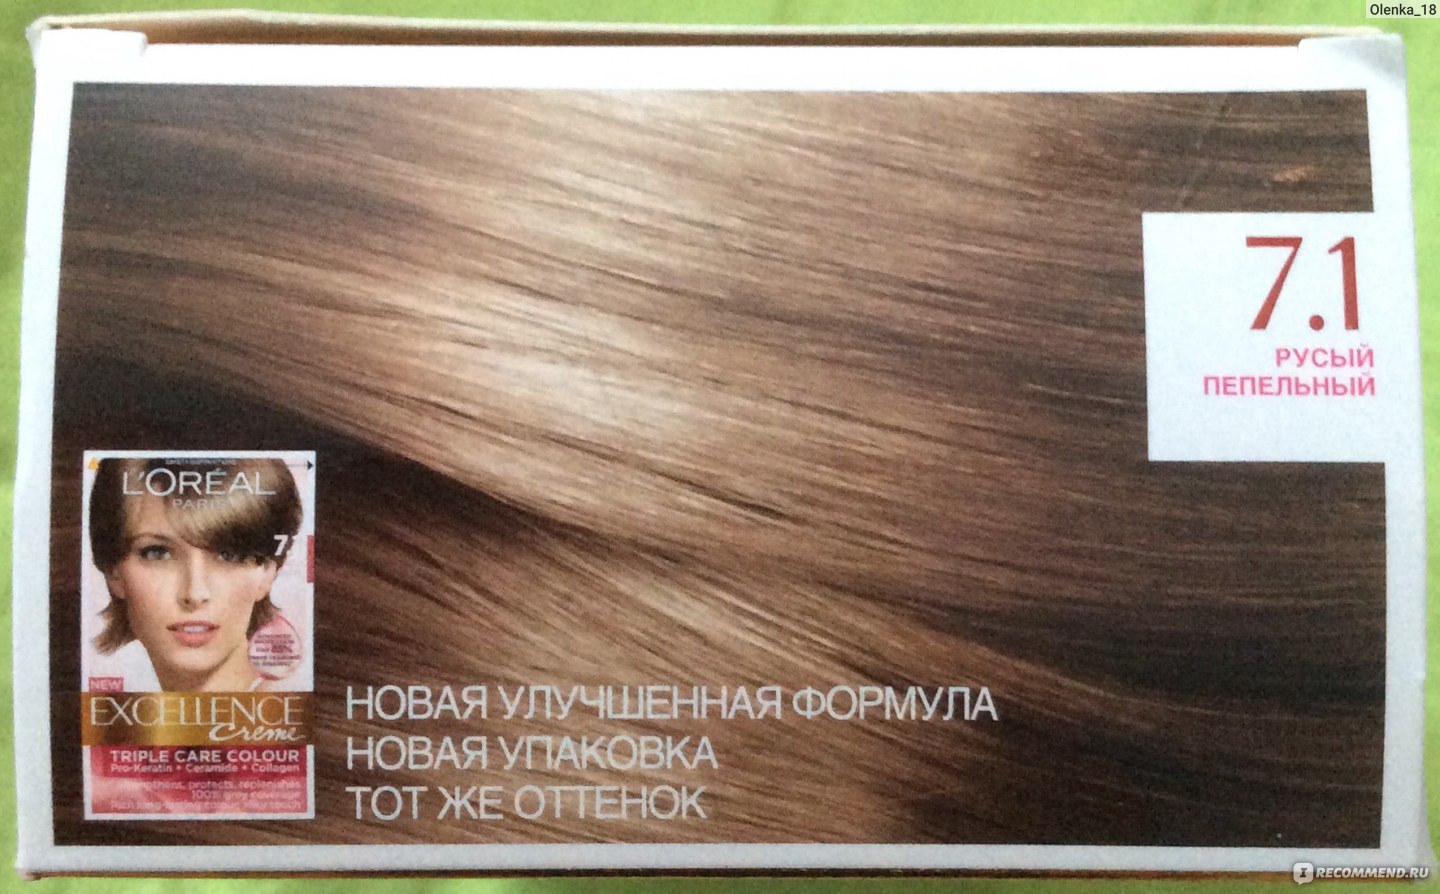 Краска для волос Excellence Creme тон 7.1 русый пепельный a9950101 6 45 400 13,00 0